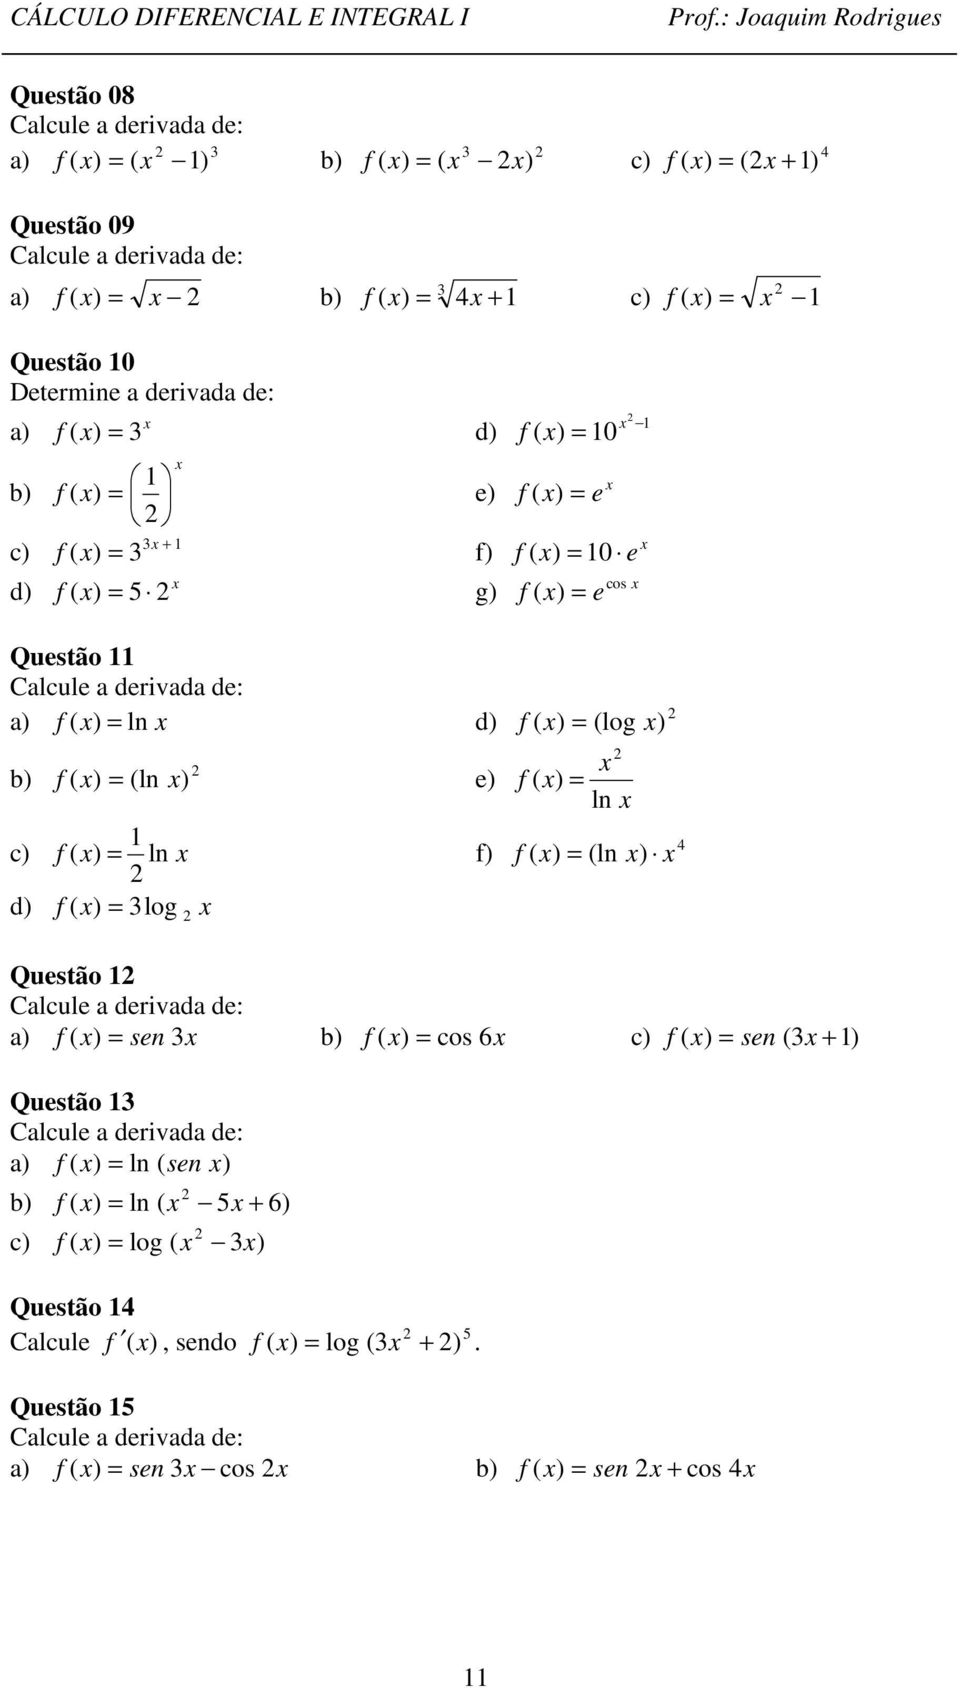 log ln ln Questão Calcule a derivada de: a sen b cos 6 c sen Questão Calcule a derivada de: a ln